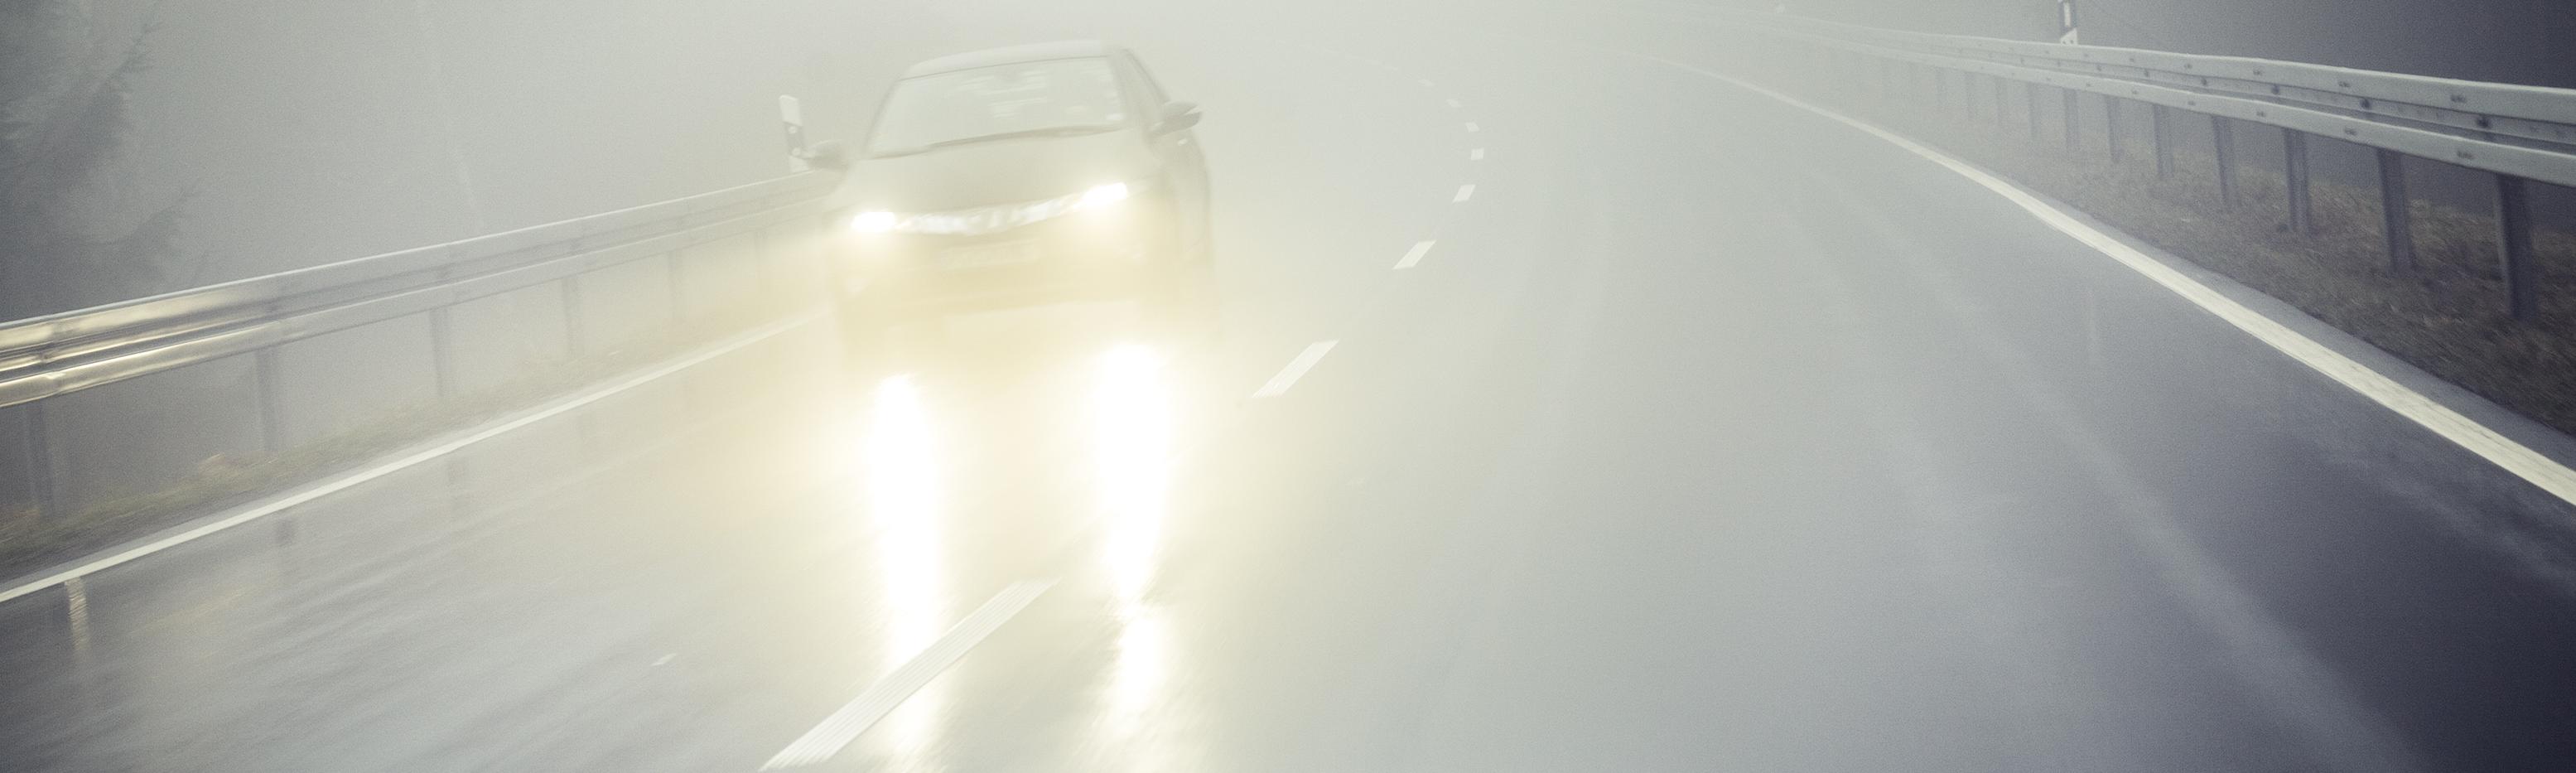 conduire avec du brouillard